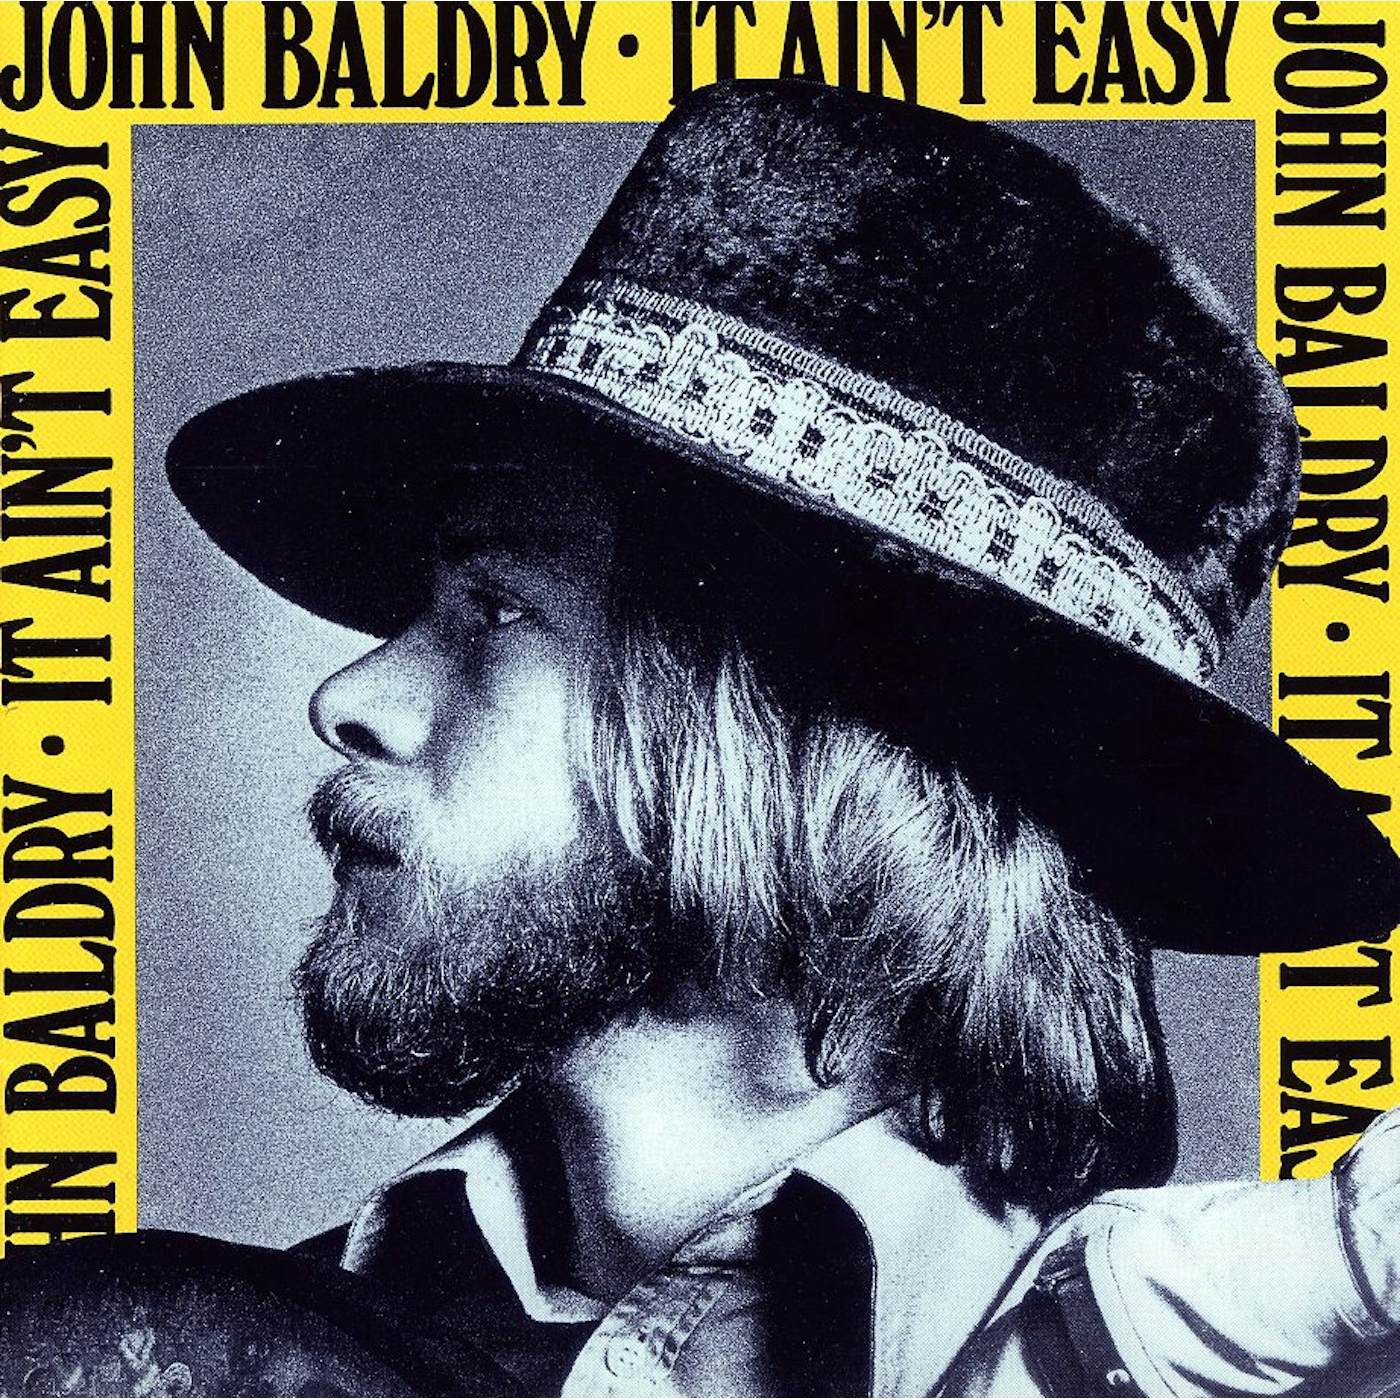 Long John Baldry IT AIN'T EASY CD